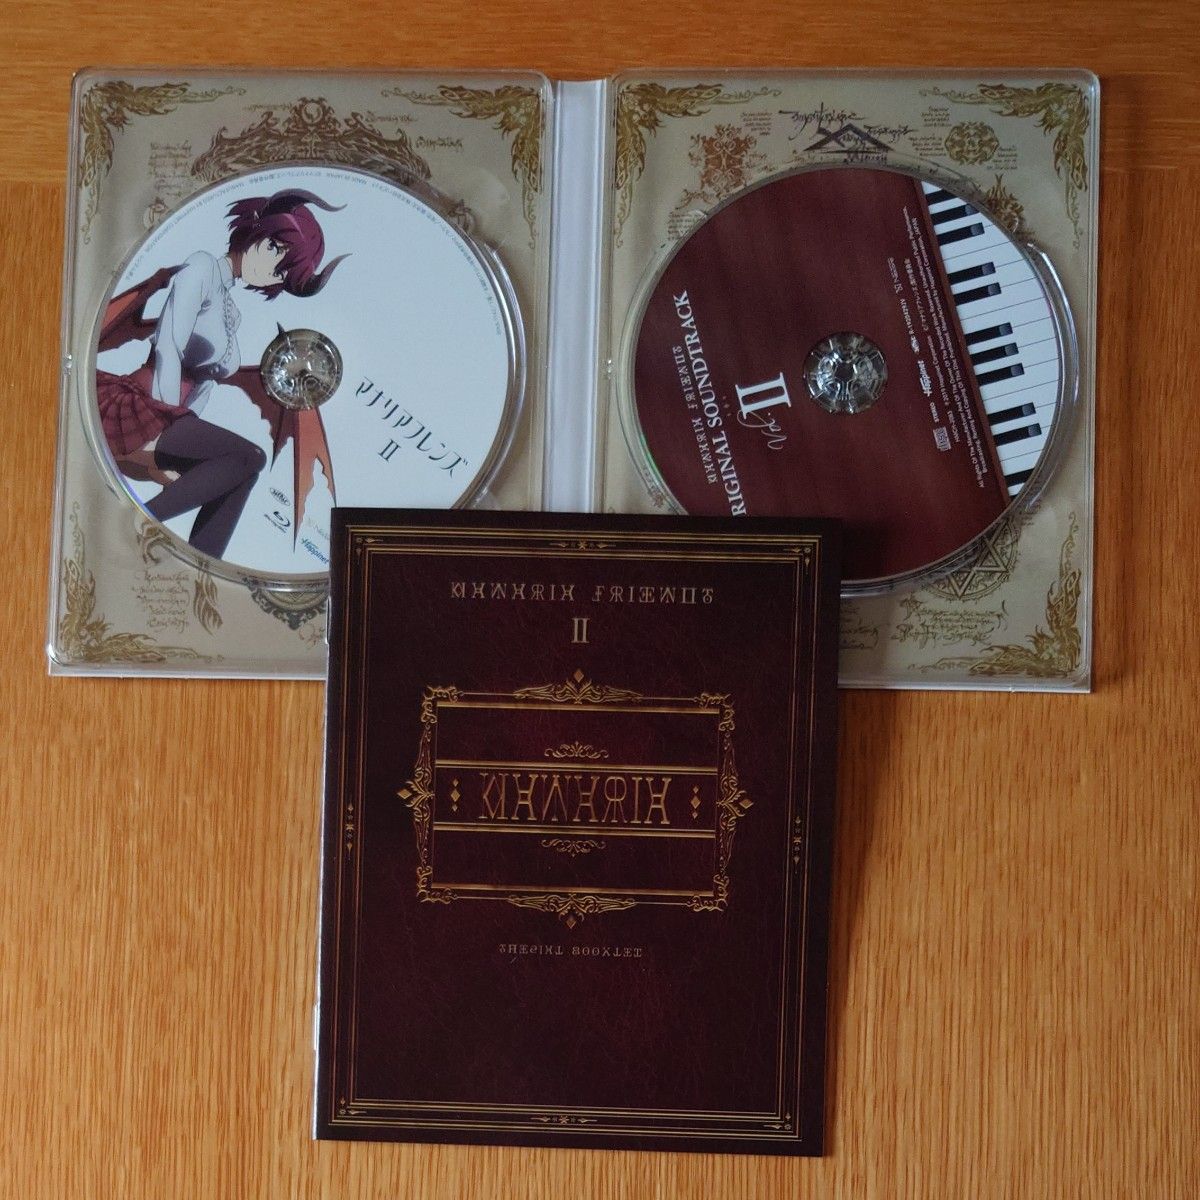  正規品 マナリアフレンズ Ⅰ & II (特典シリアルコード付) [Blu-ray]